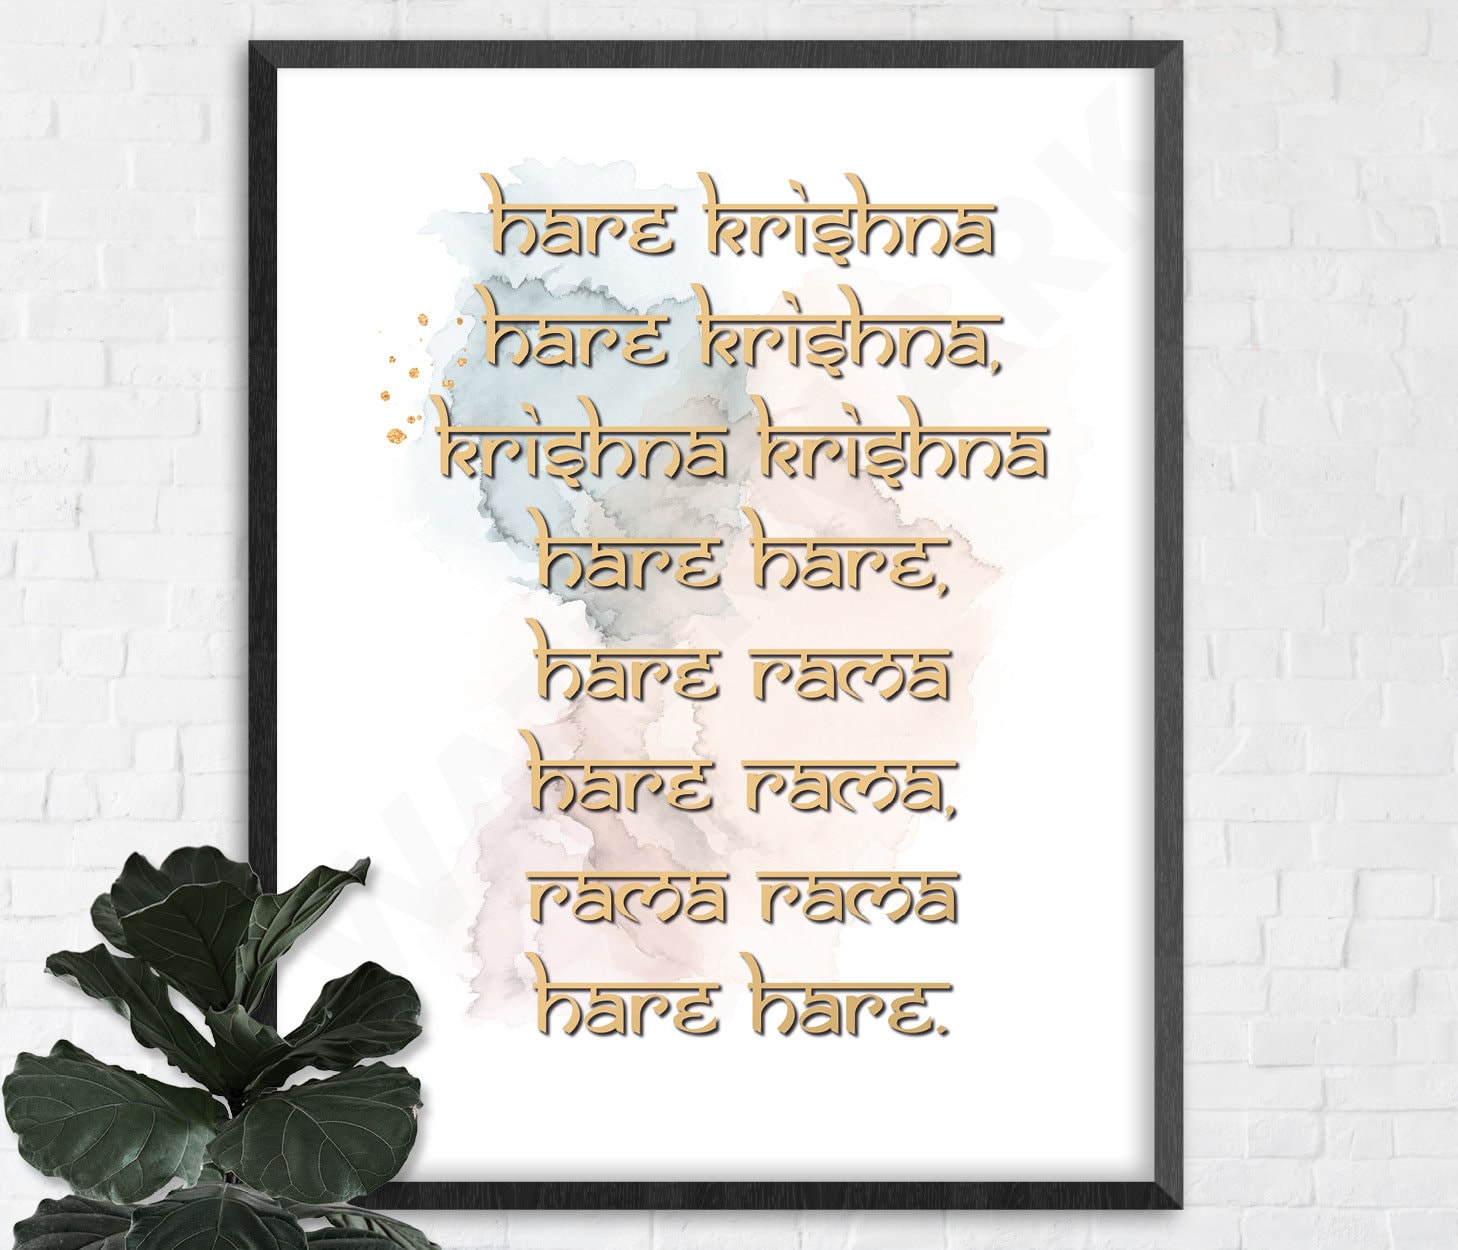 Hare Krishna, Hare Krishna, Krishna Krishna, Hare Hare…